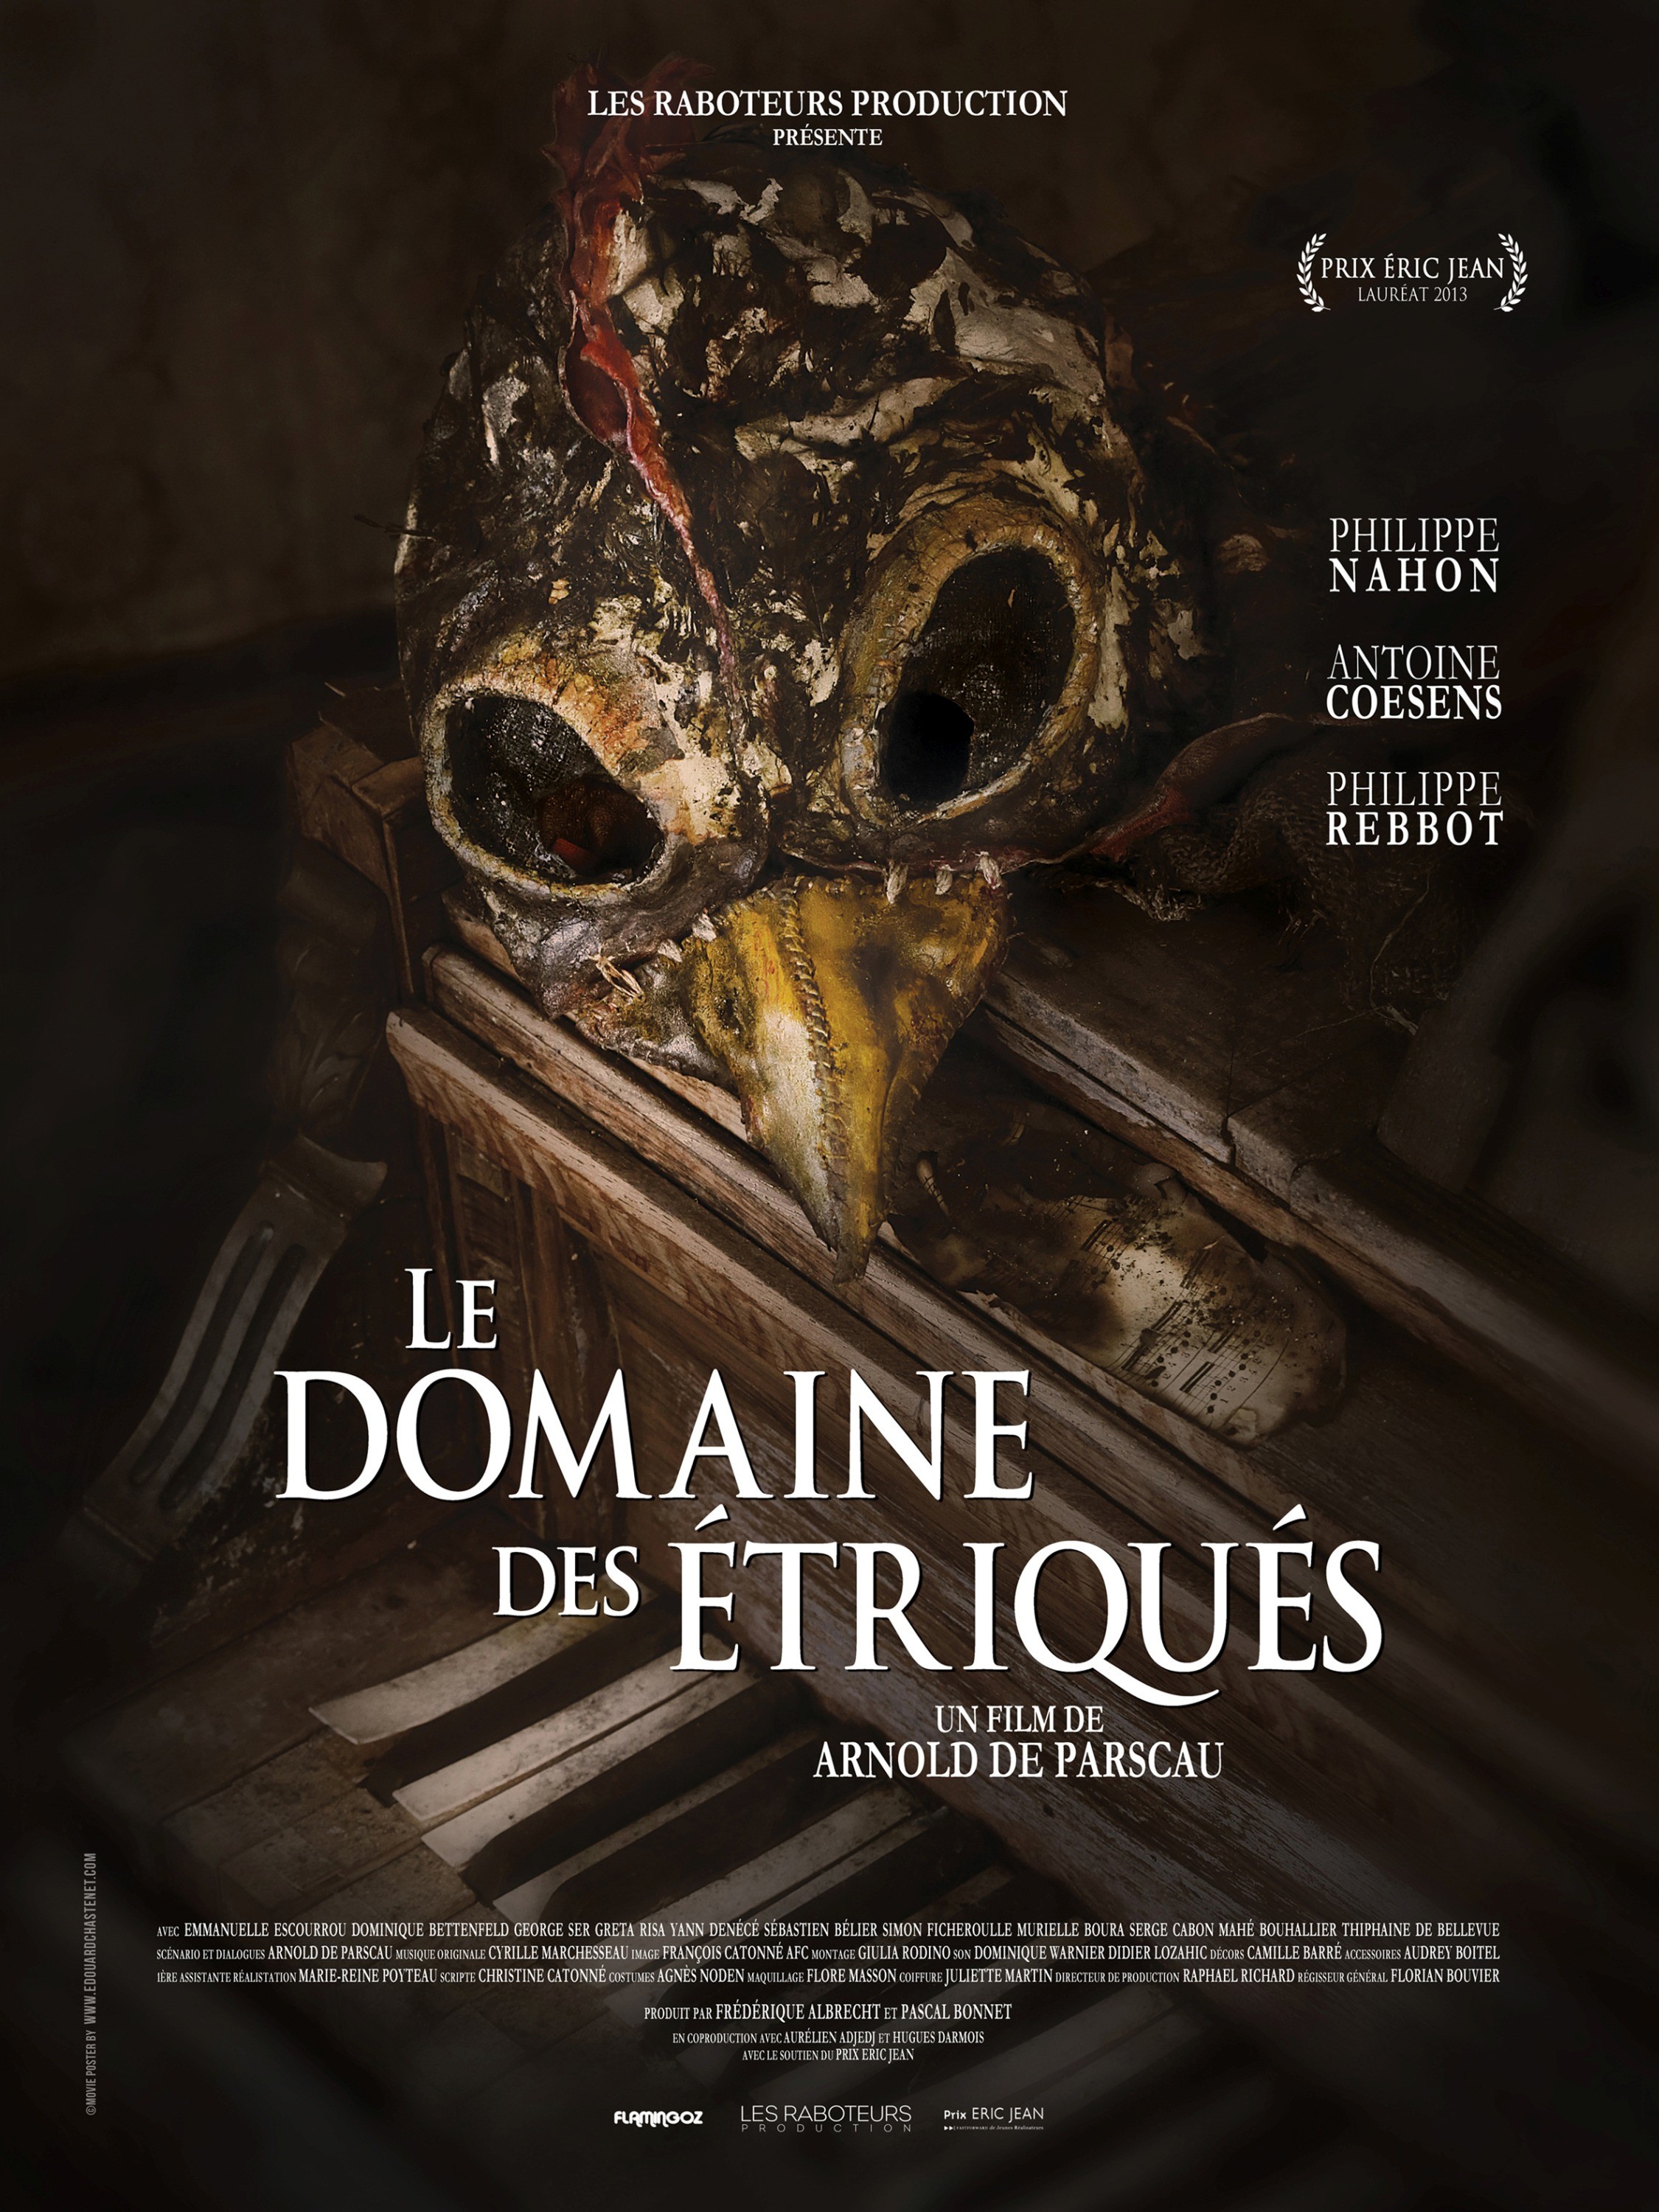 Mega Sized Movie Poster Image for Le domaine des triqus